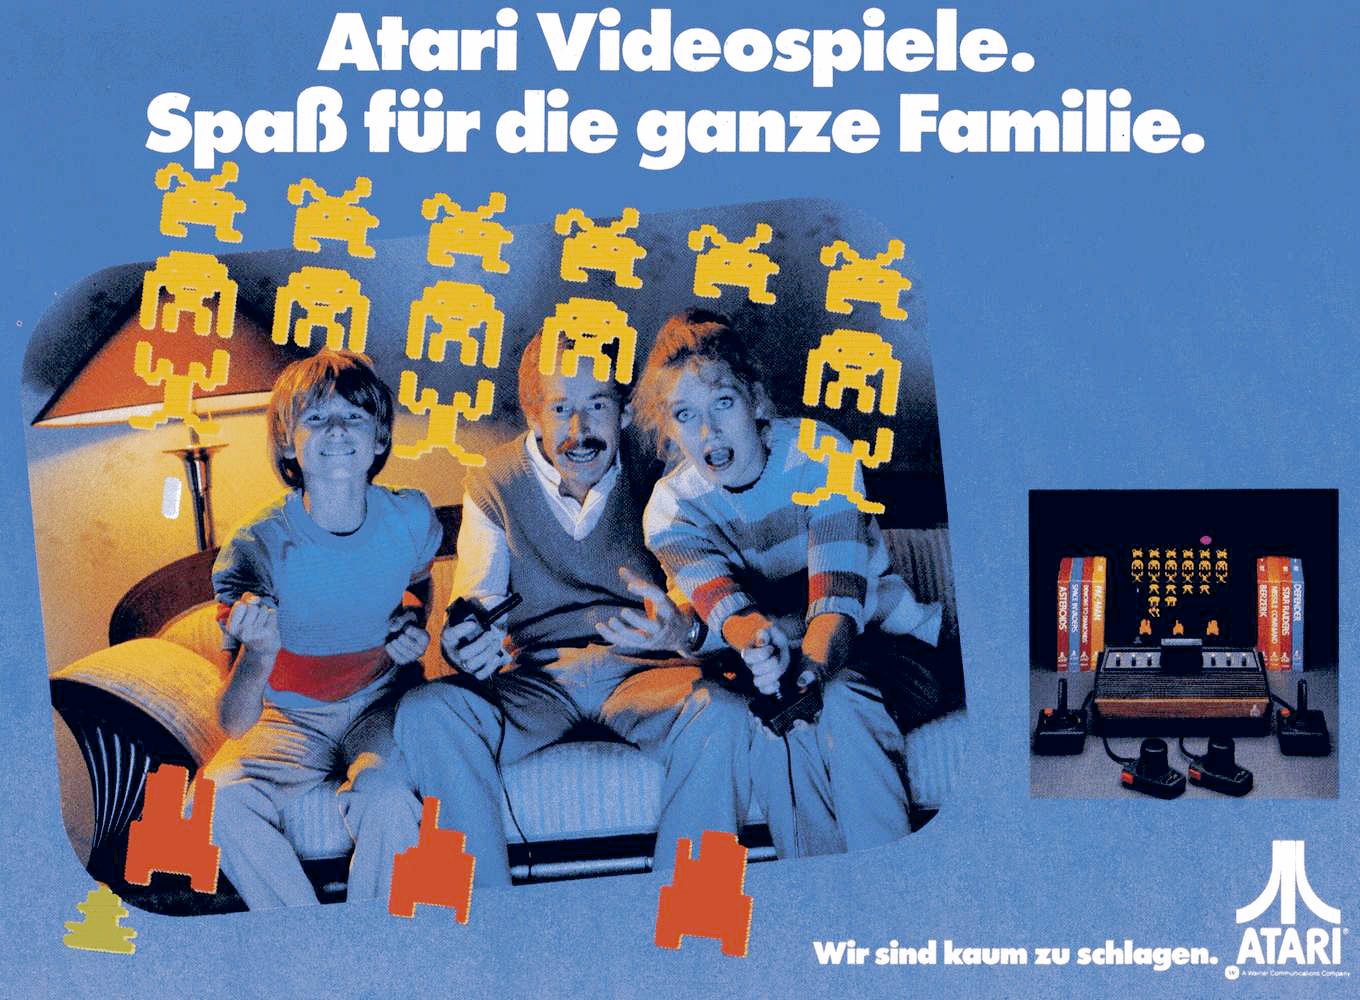 Atari Werbung mit Space Invaders-Motiv: „Wir sind kaum zu schlagen“. (Bild: Atari)